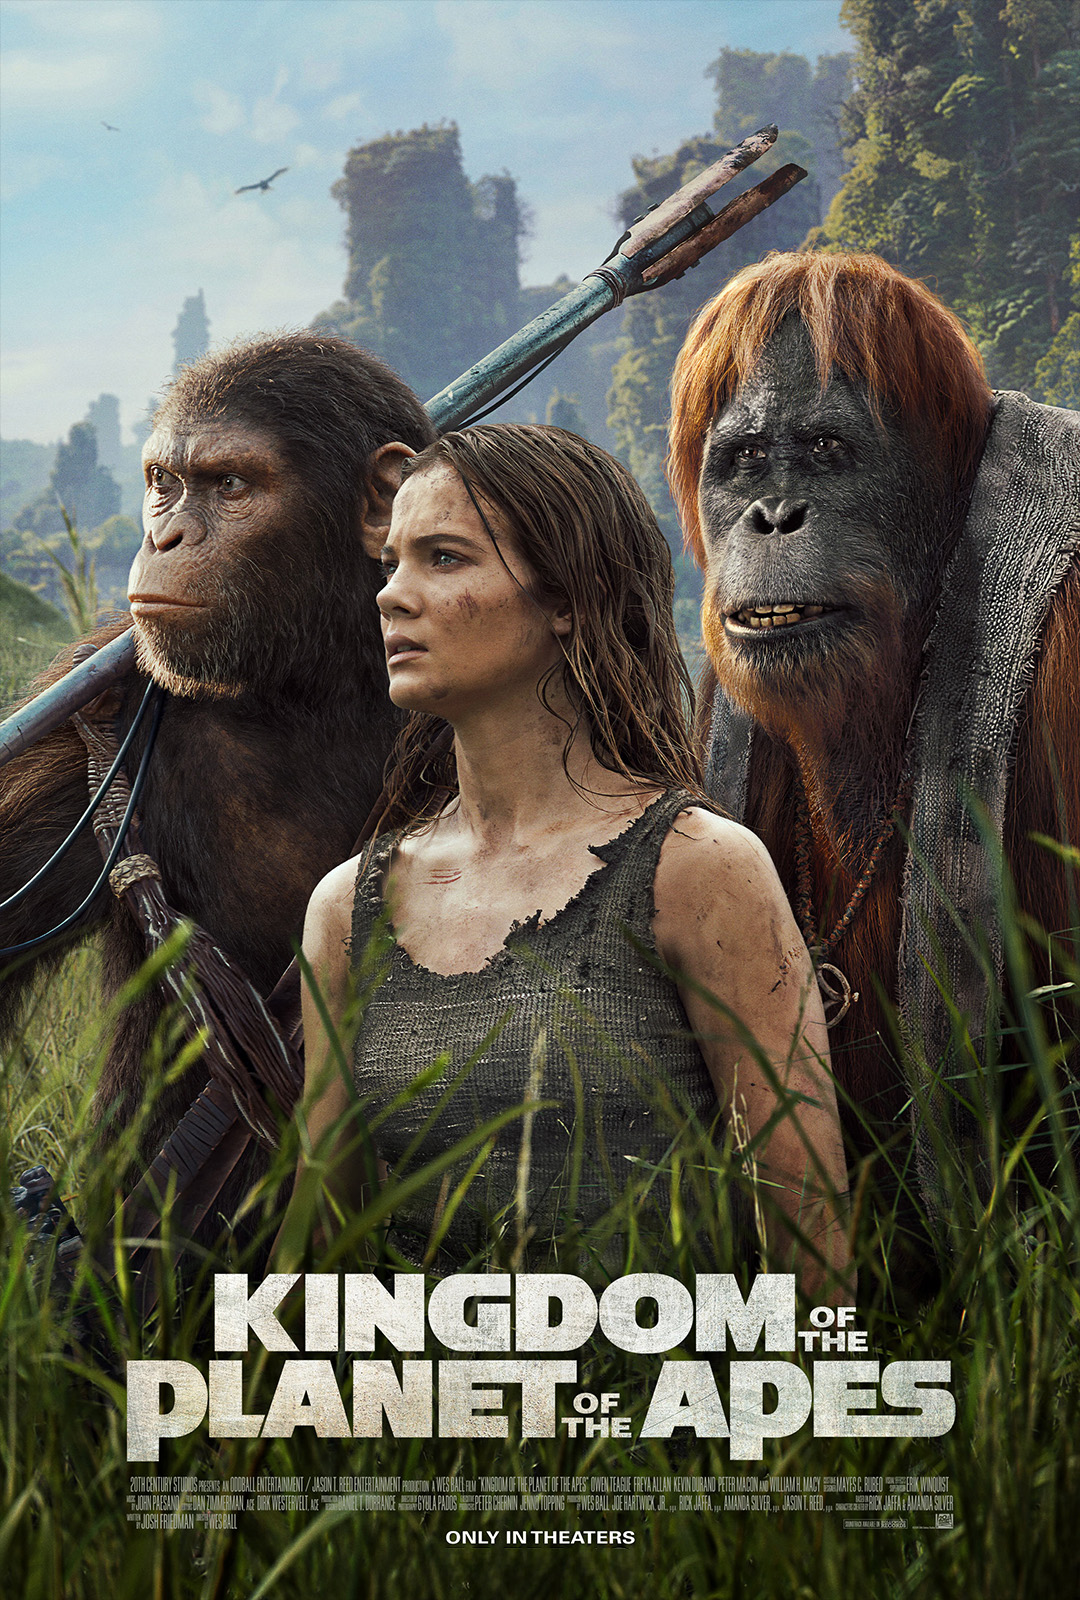 Movie Poster: El Planeta de los Simios: Nuevo Reino